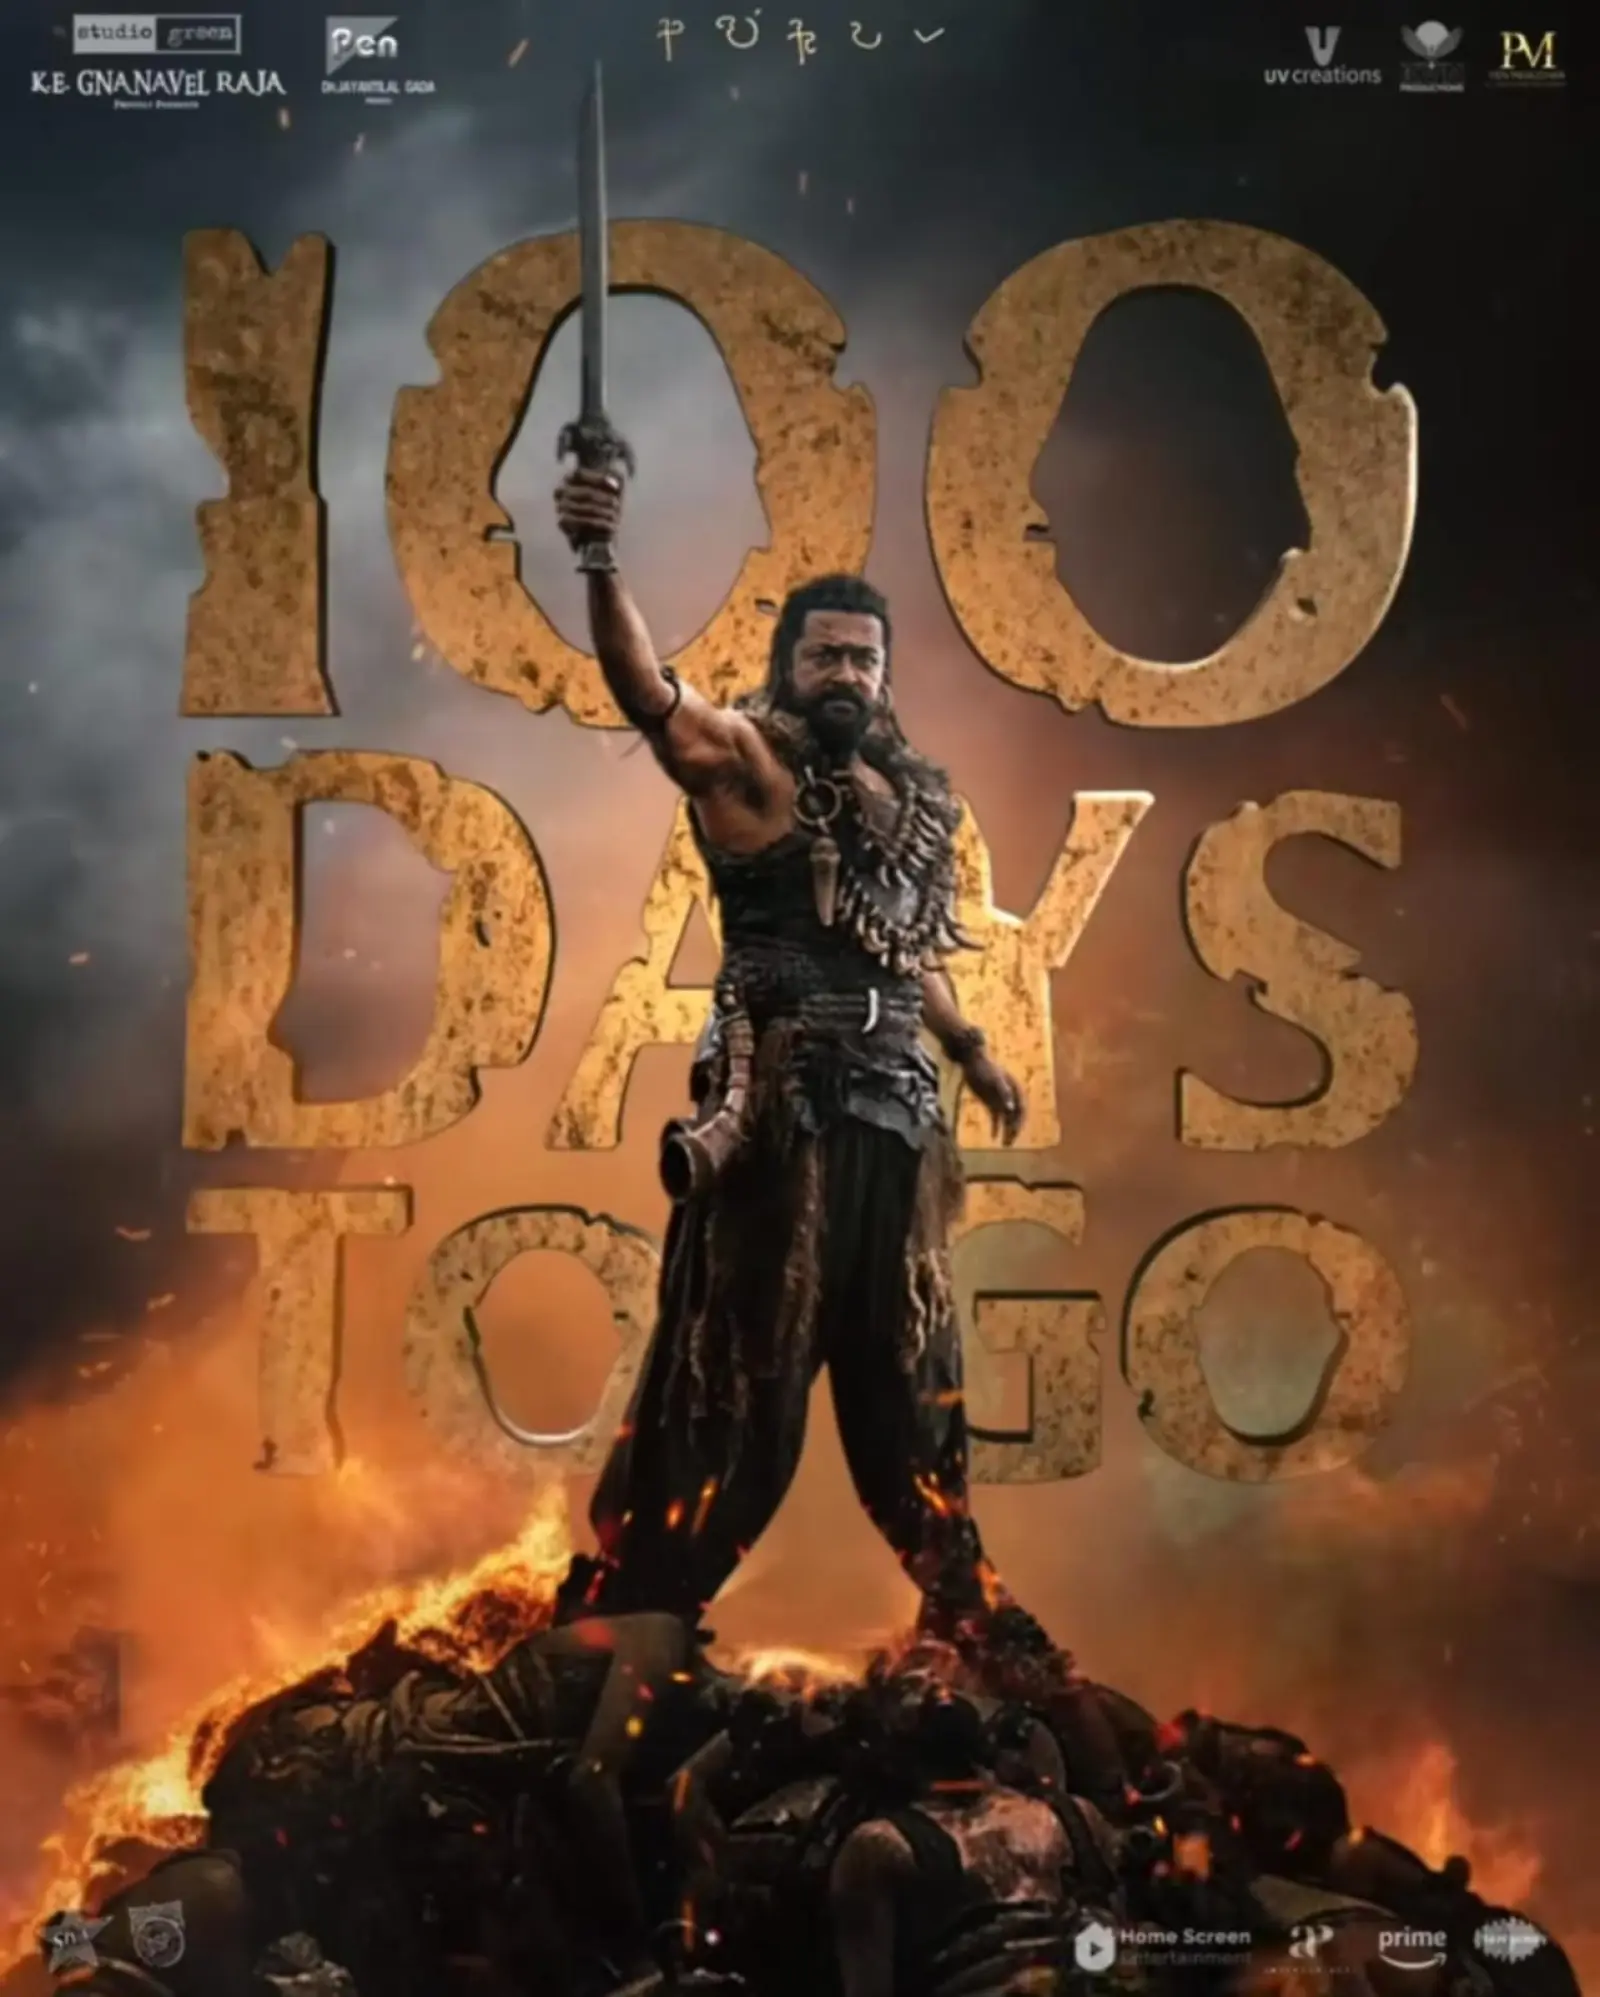 सूर्या अभिनीत स्टूडियो ग्रीन की 'कांगुवा' को रिलीज़ होने में सिर्फ 100 दिन बाकी! राजाओं के आगमन के लिए हो जाइए तैयार